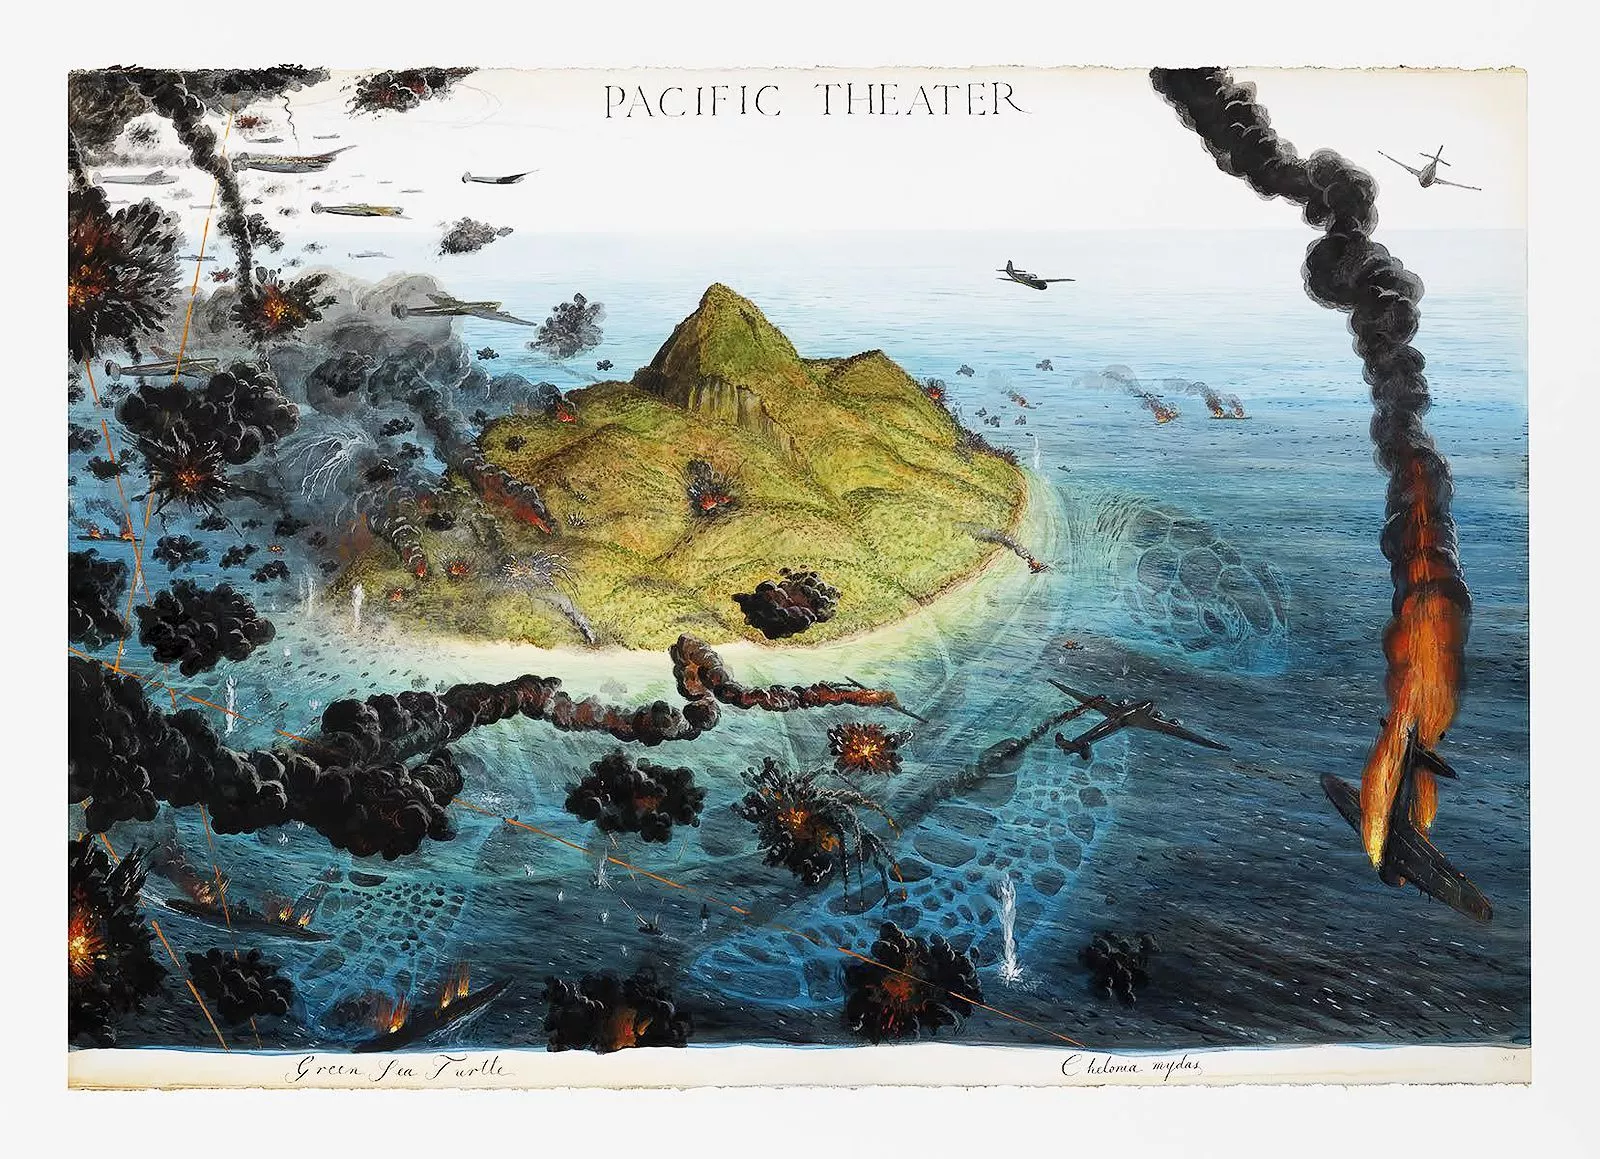 Уолтон Форд. «Тихоокеанский театр» (Pacific Theater)